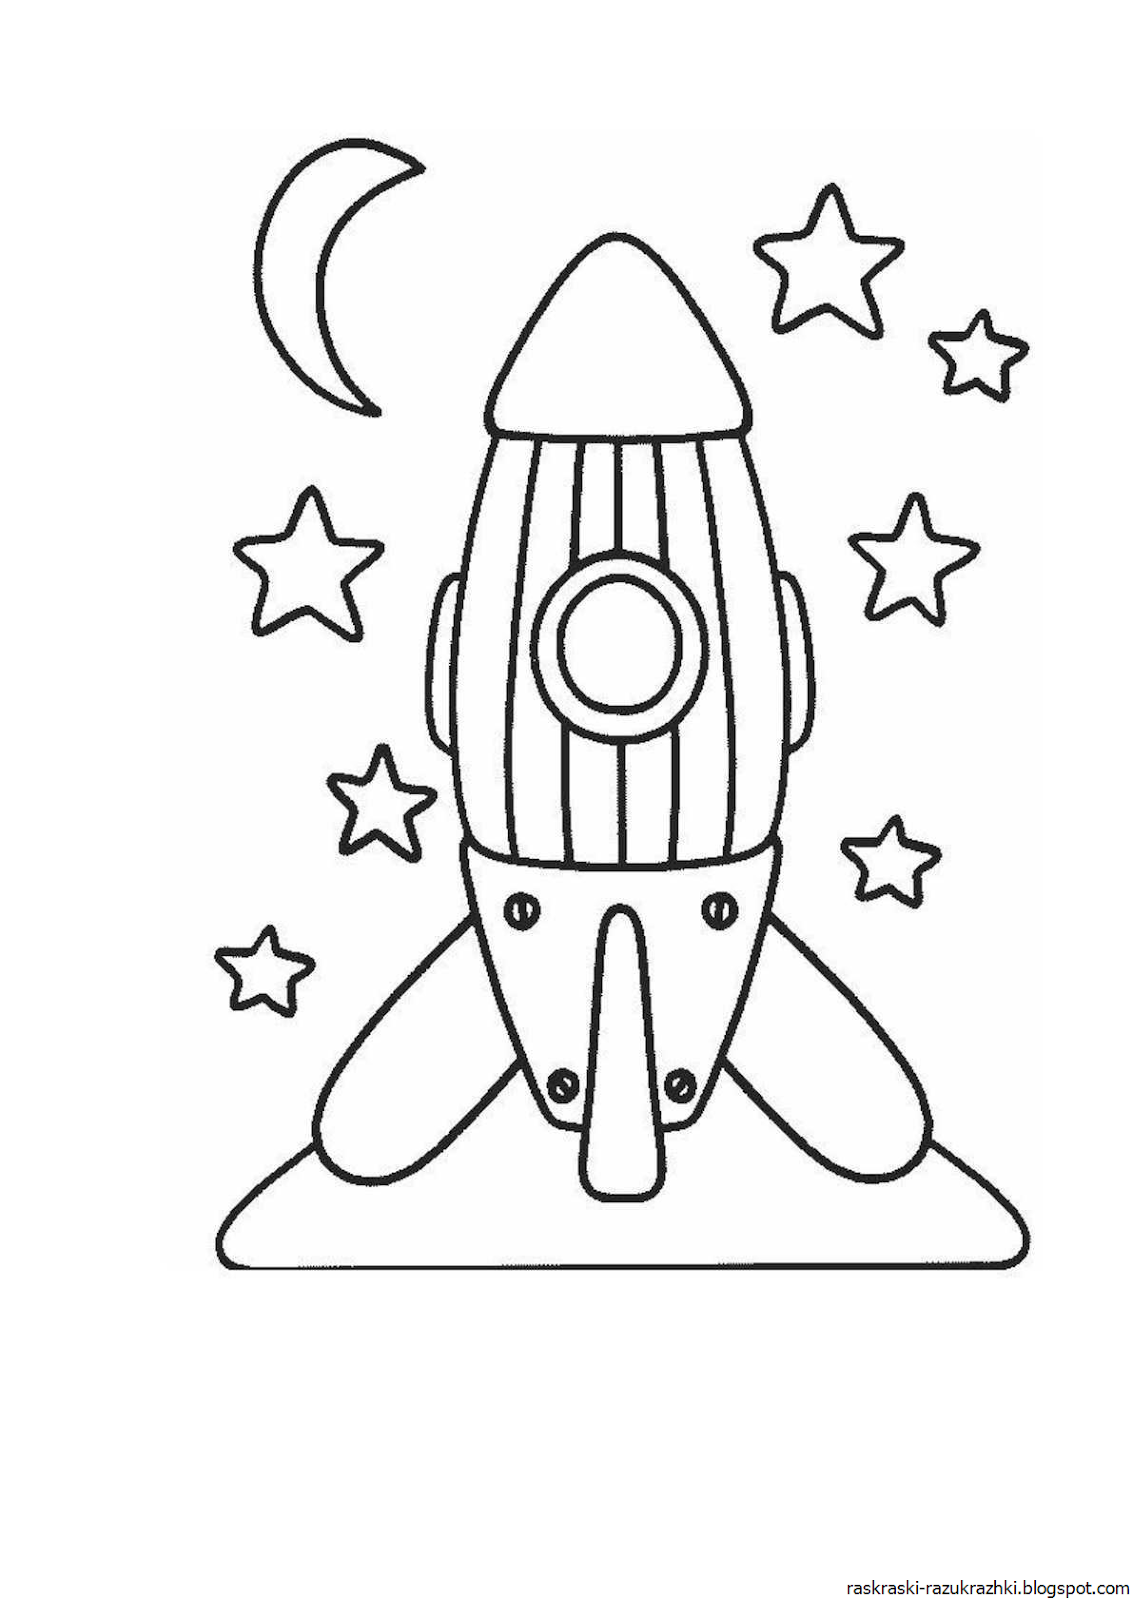 Ракета раскрасить. Ракета раскраска. Ракета раскраска для детей. Космическая ракета раскраска для детей. Раскраски на тему космос.